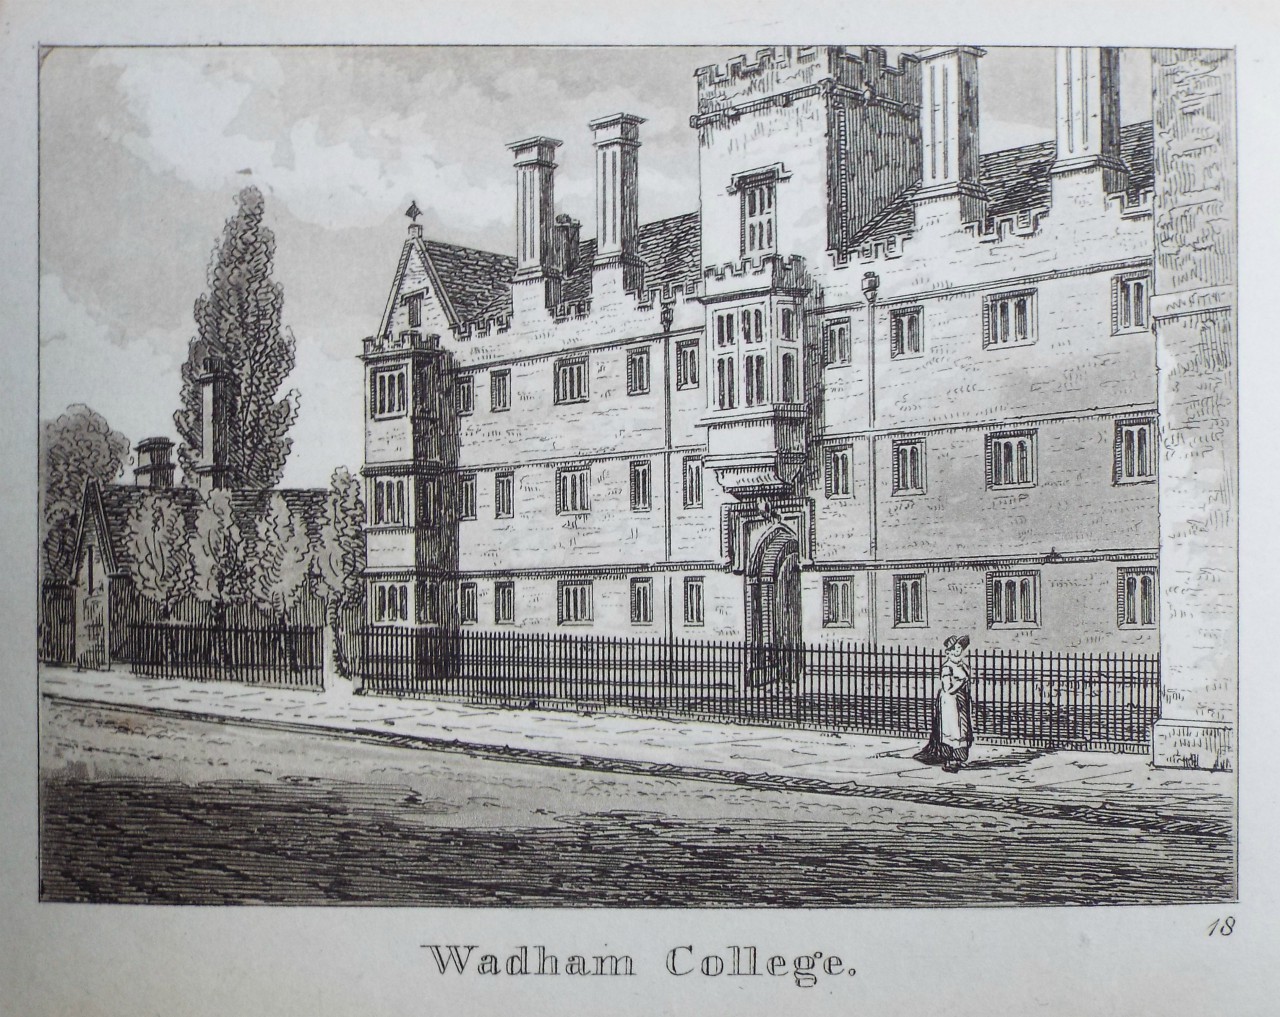 Aquatint - Wadham College.